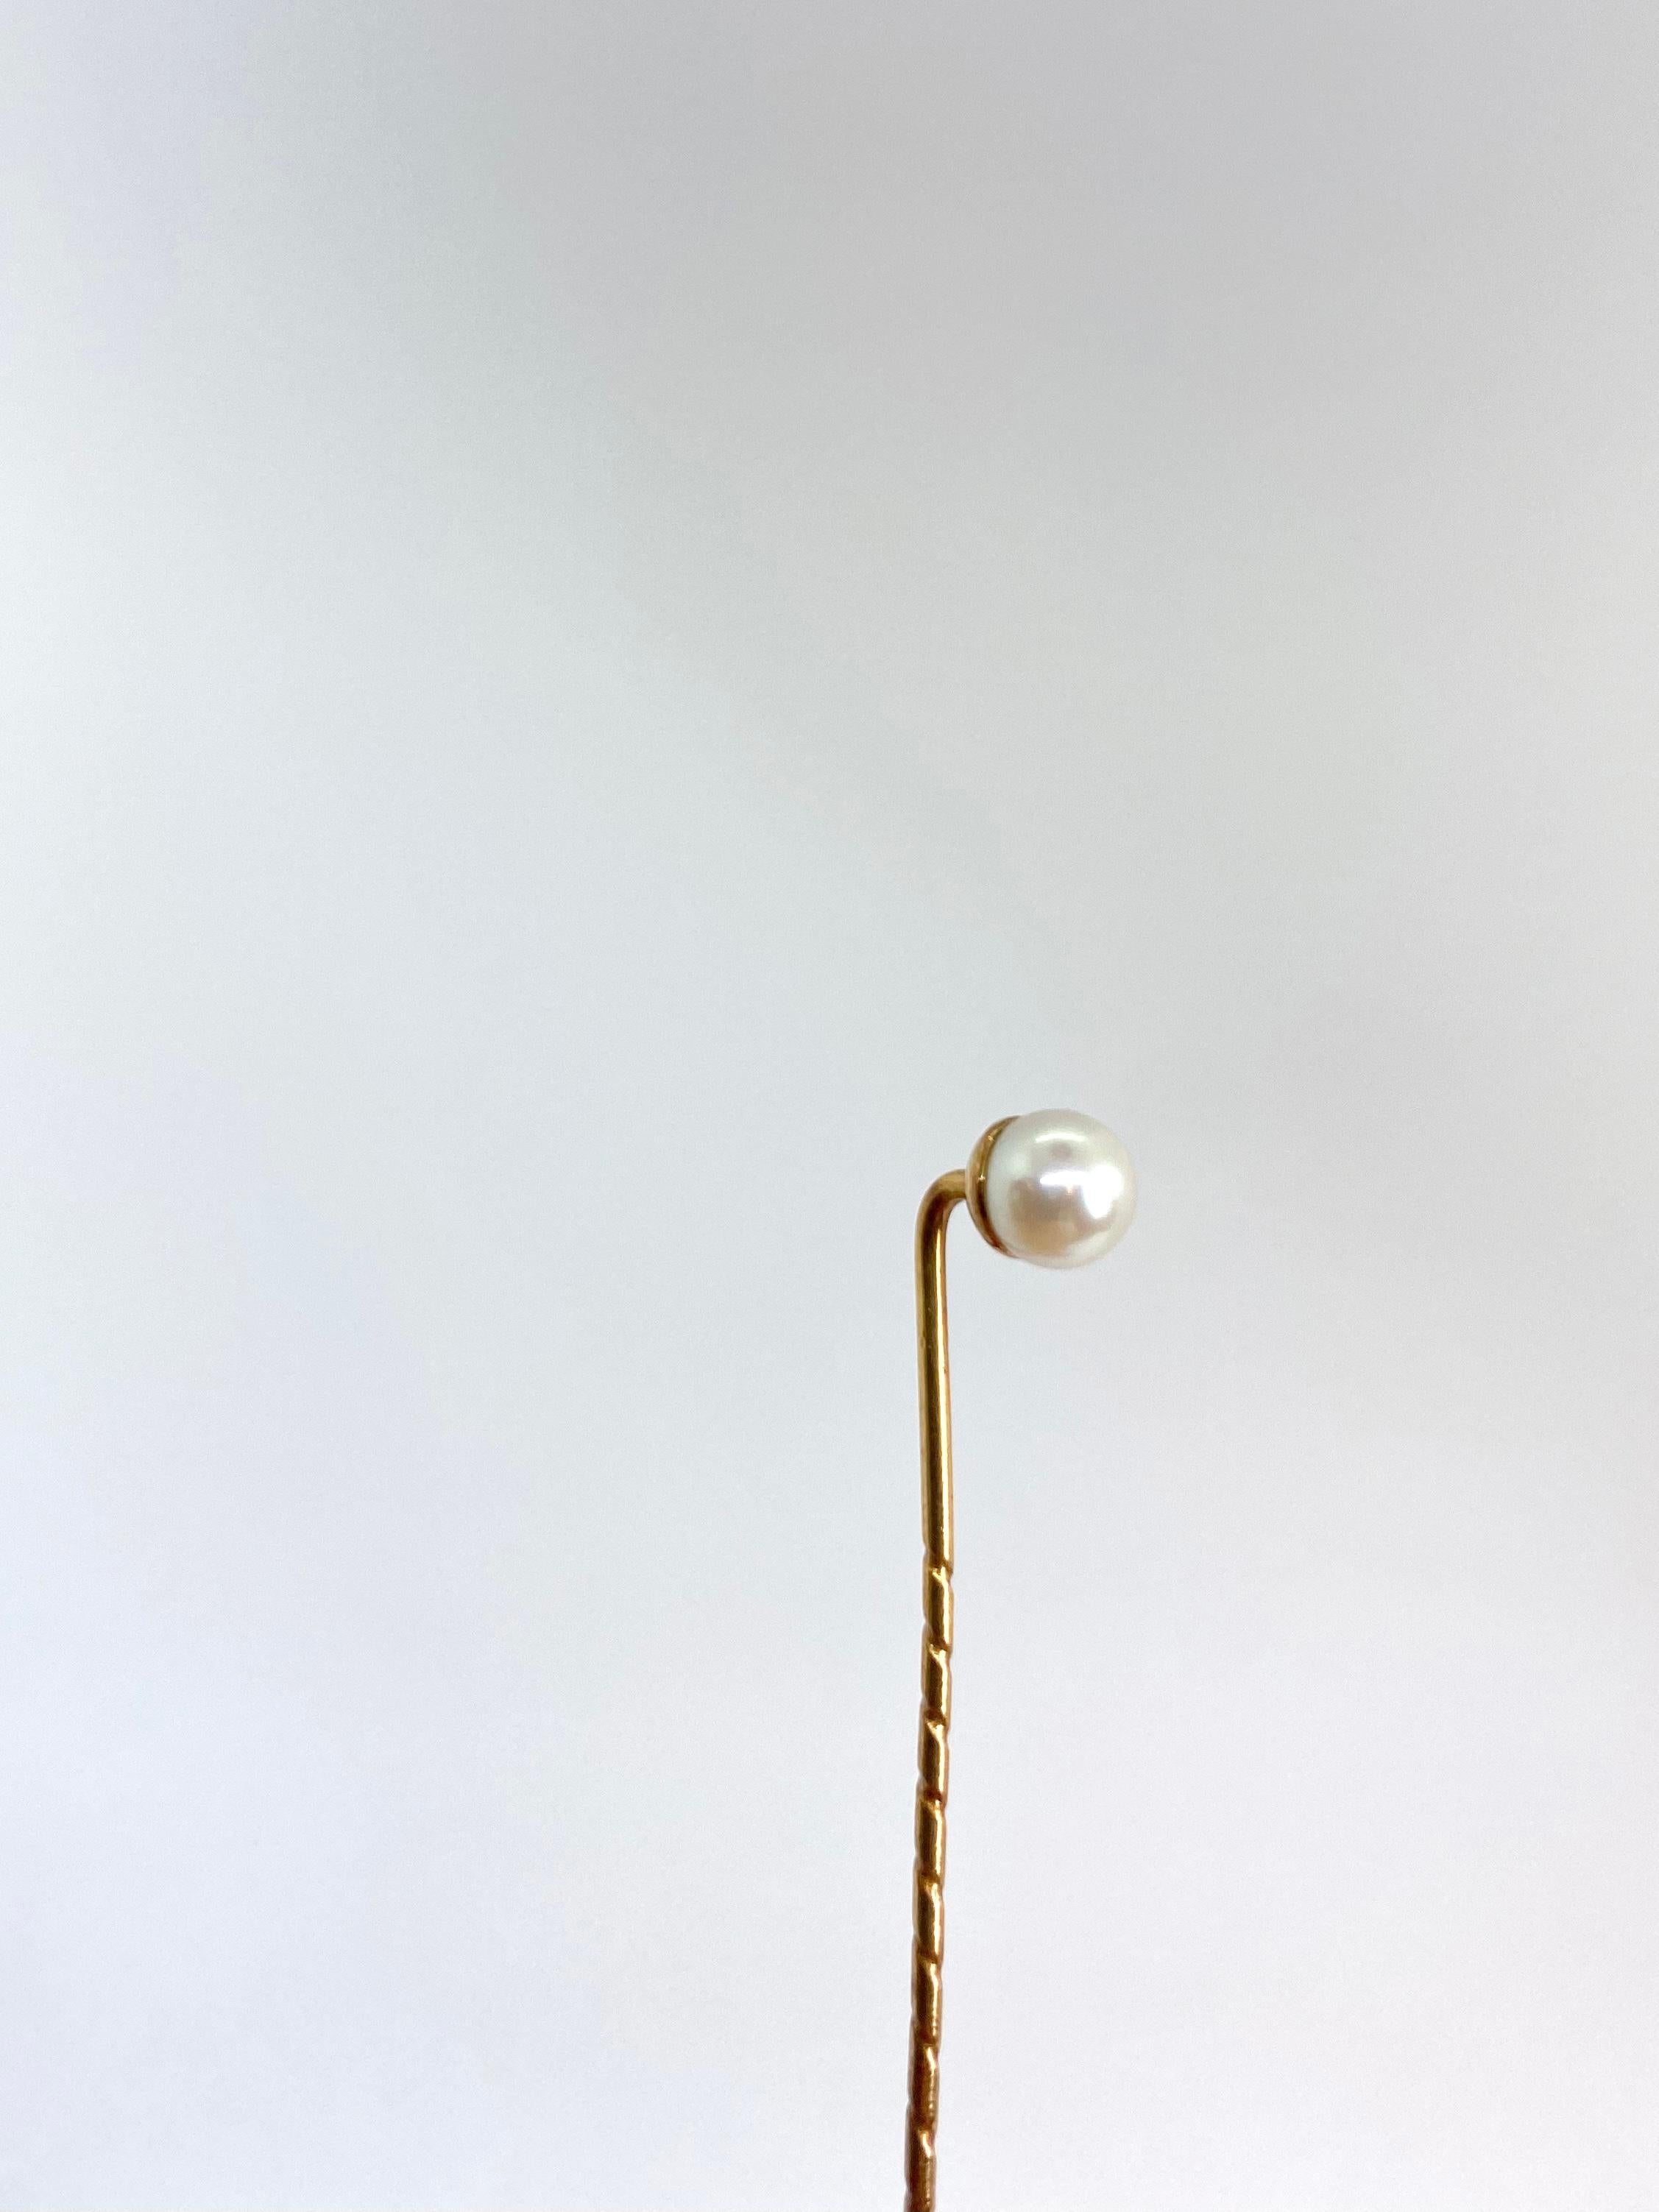 Stickpin Gold and Pearl Finland In Good Condition For Sale In Orimattila, FI